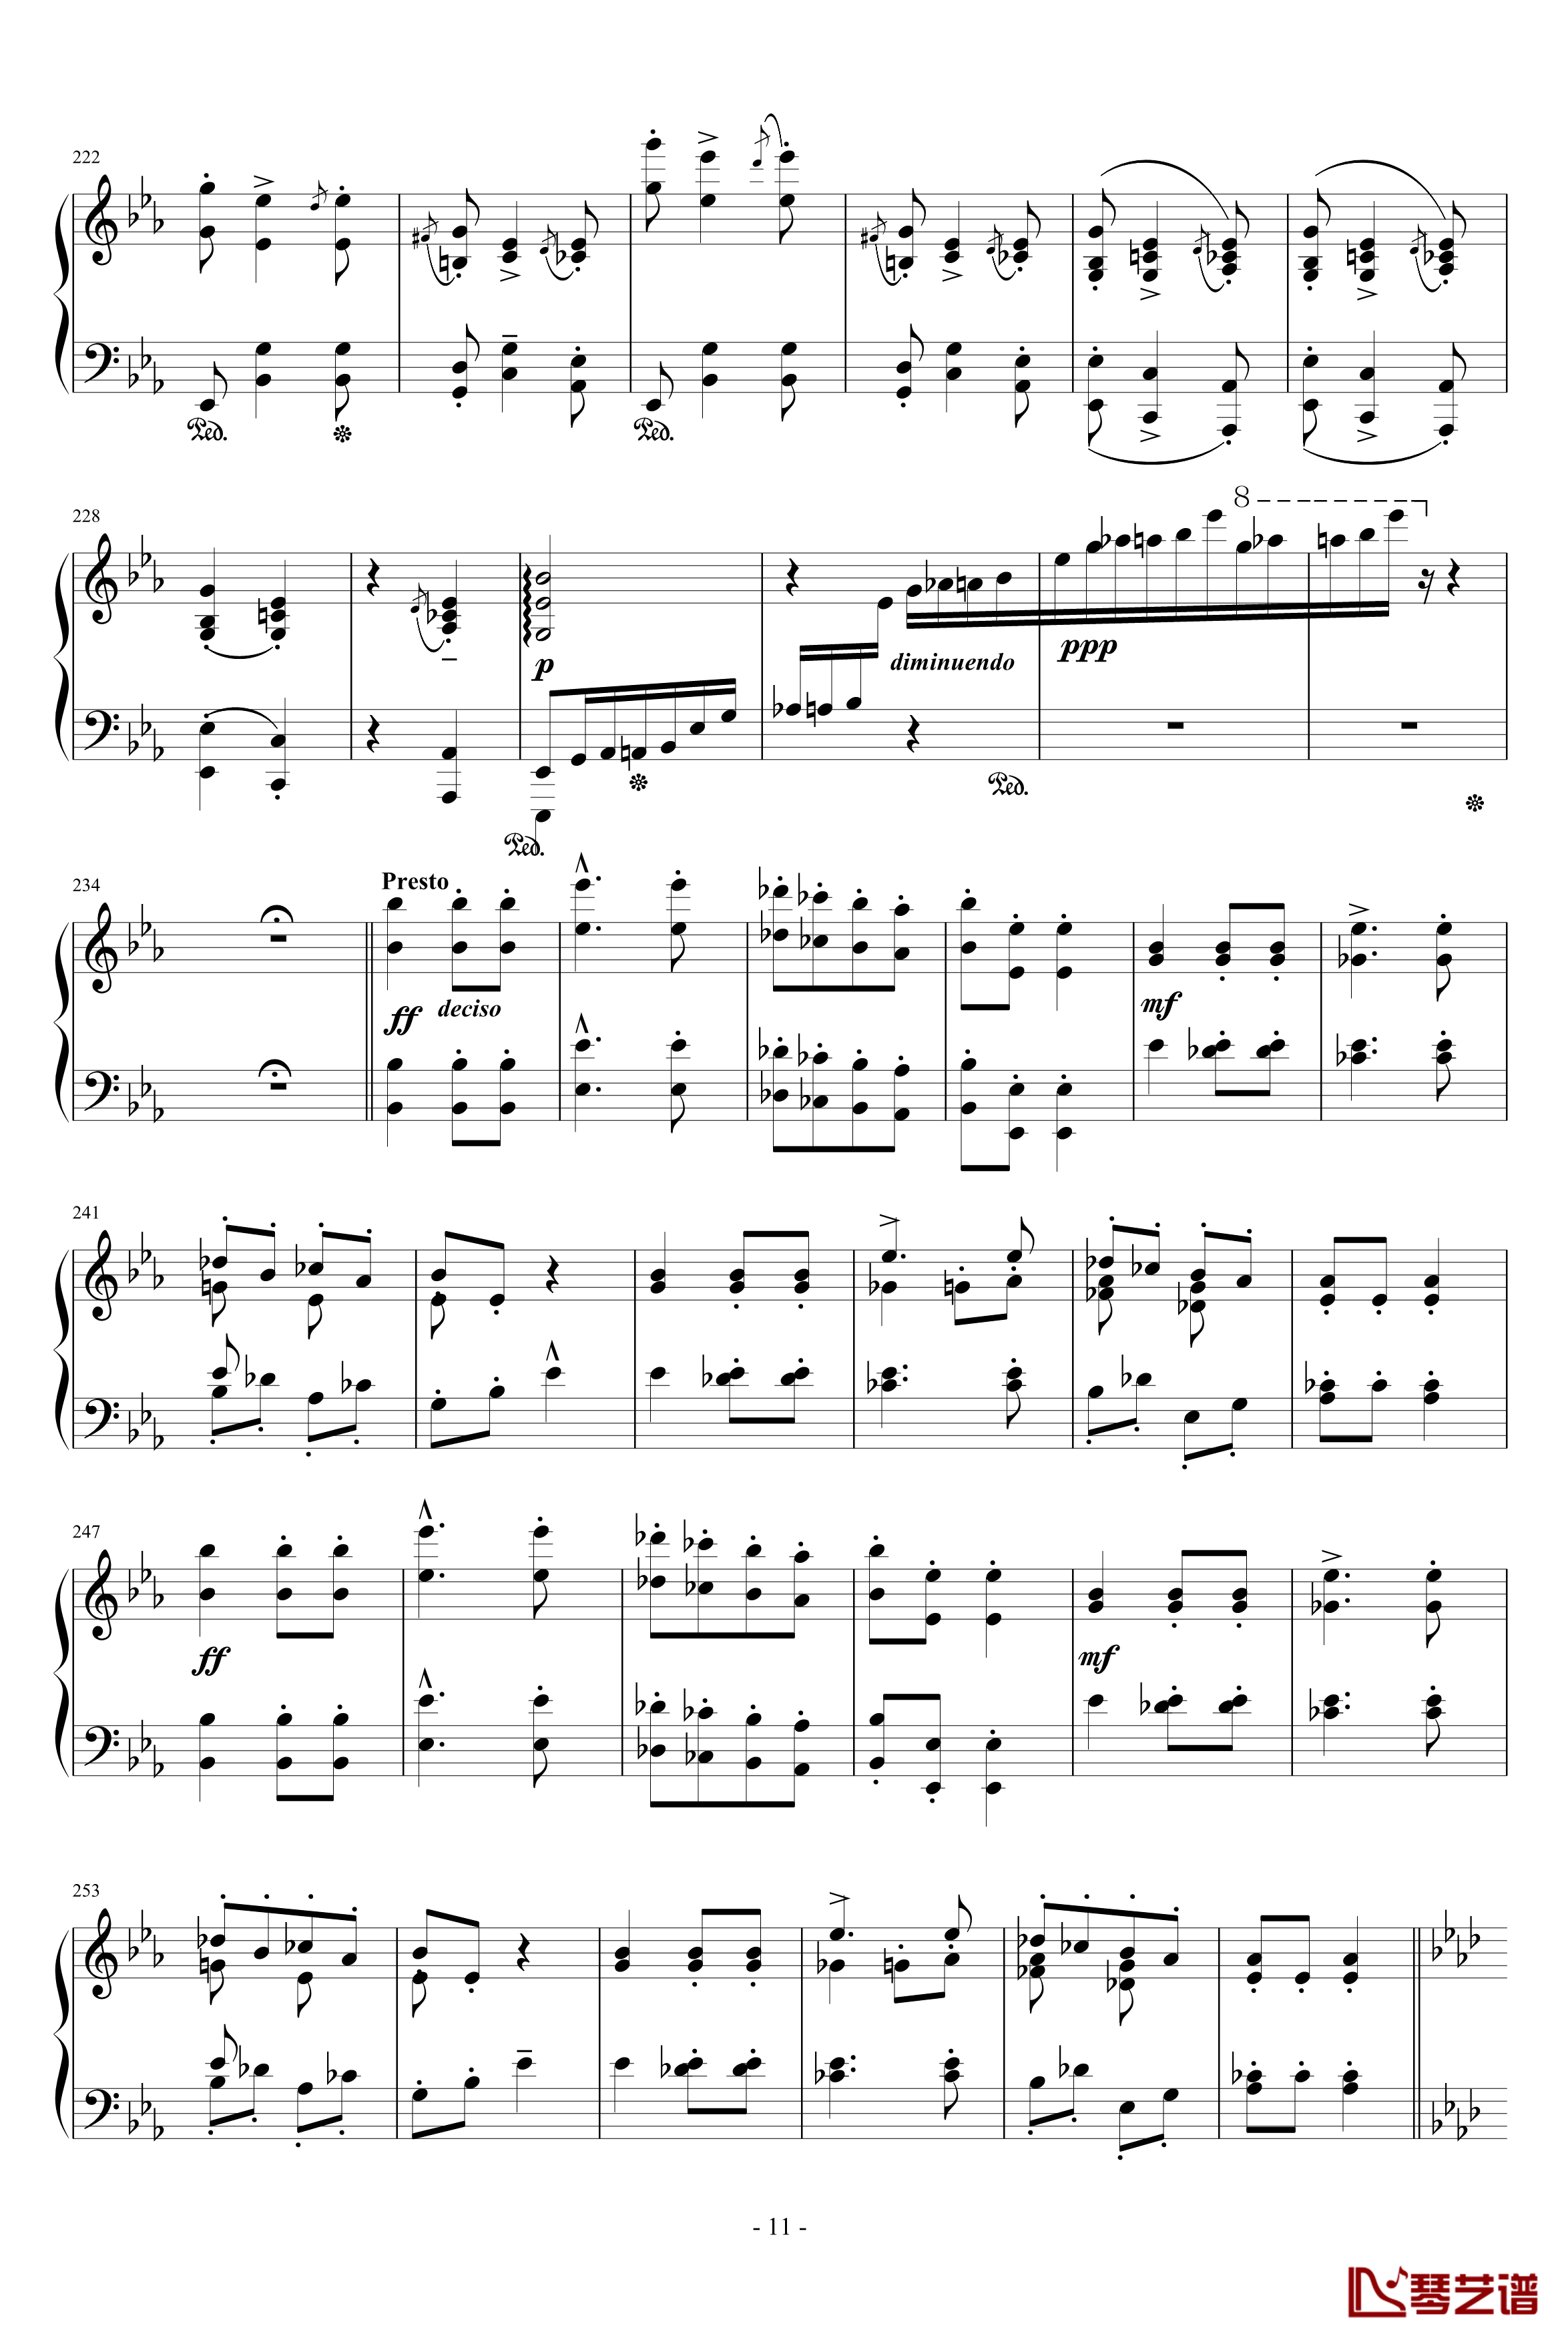 匈牙利狂想曲第9号钢琴谱-19首匈狂里篇幅最浩大、技巧最艰深的作品之一-李斯特11